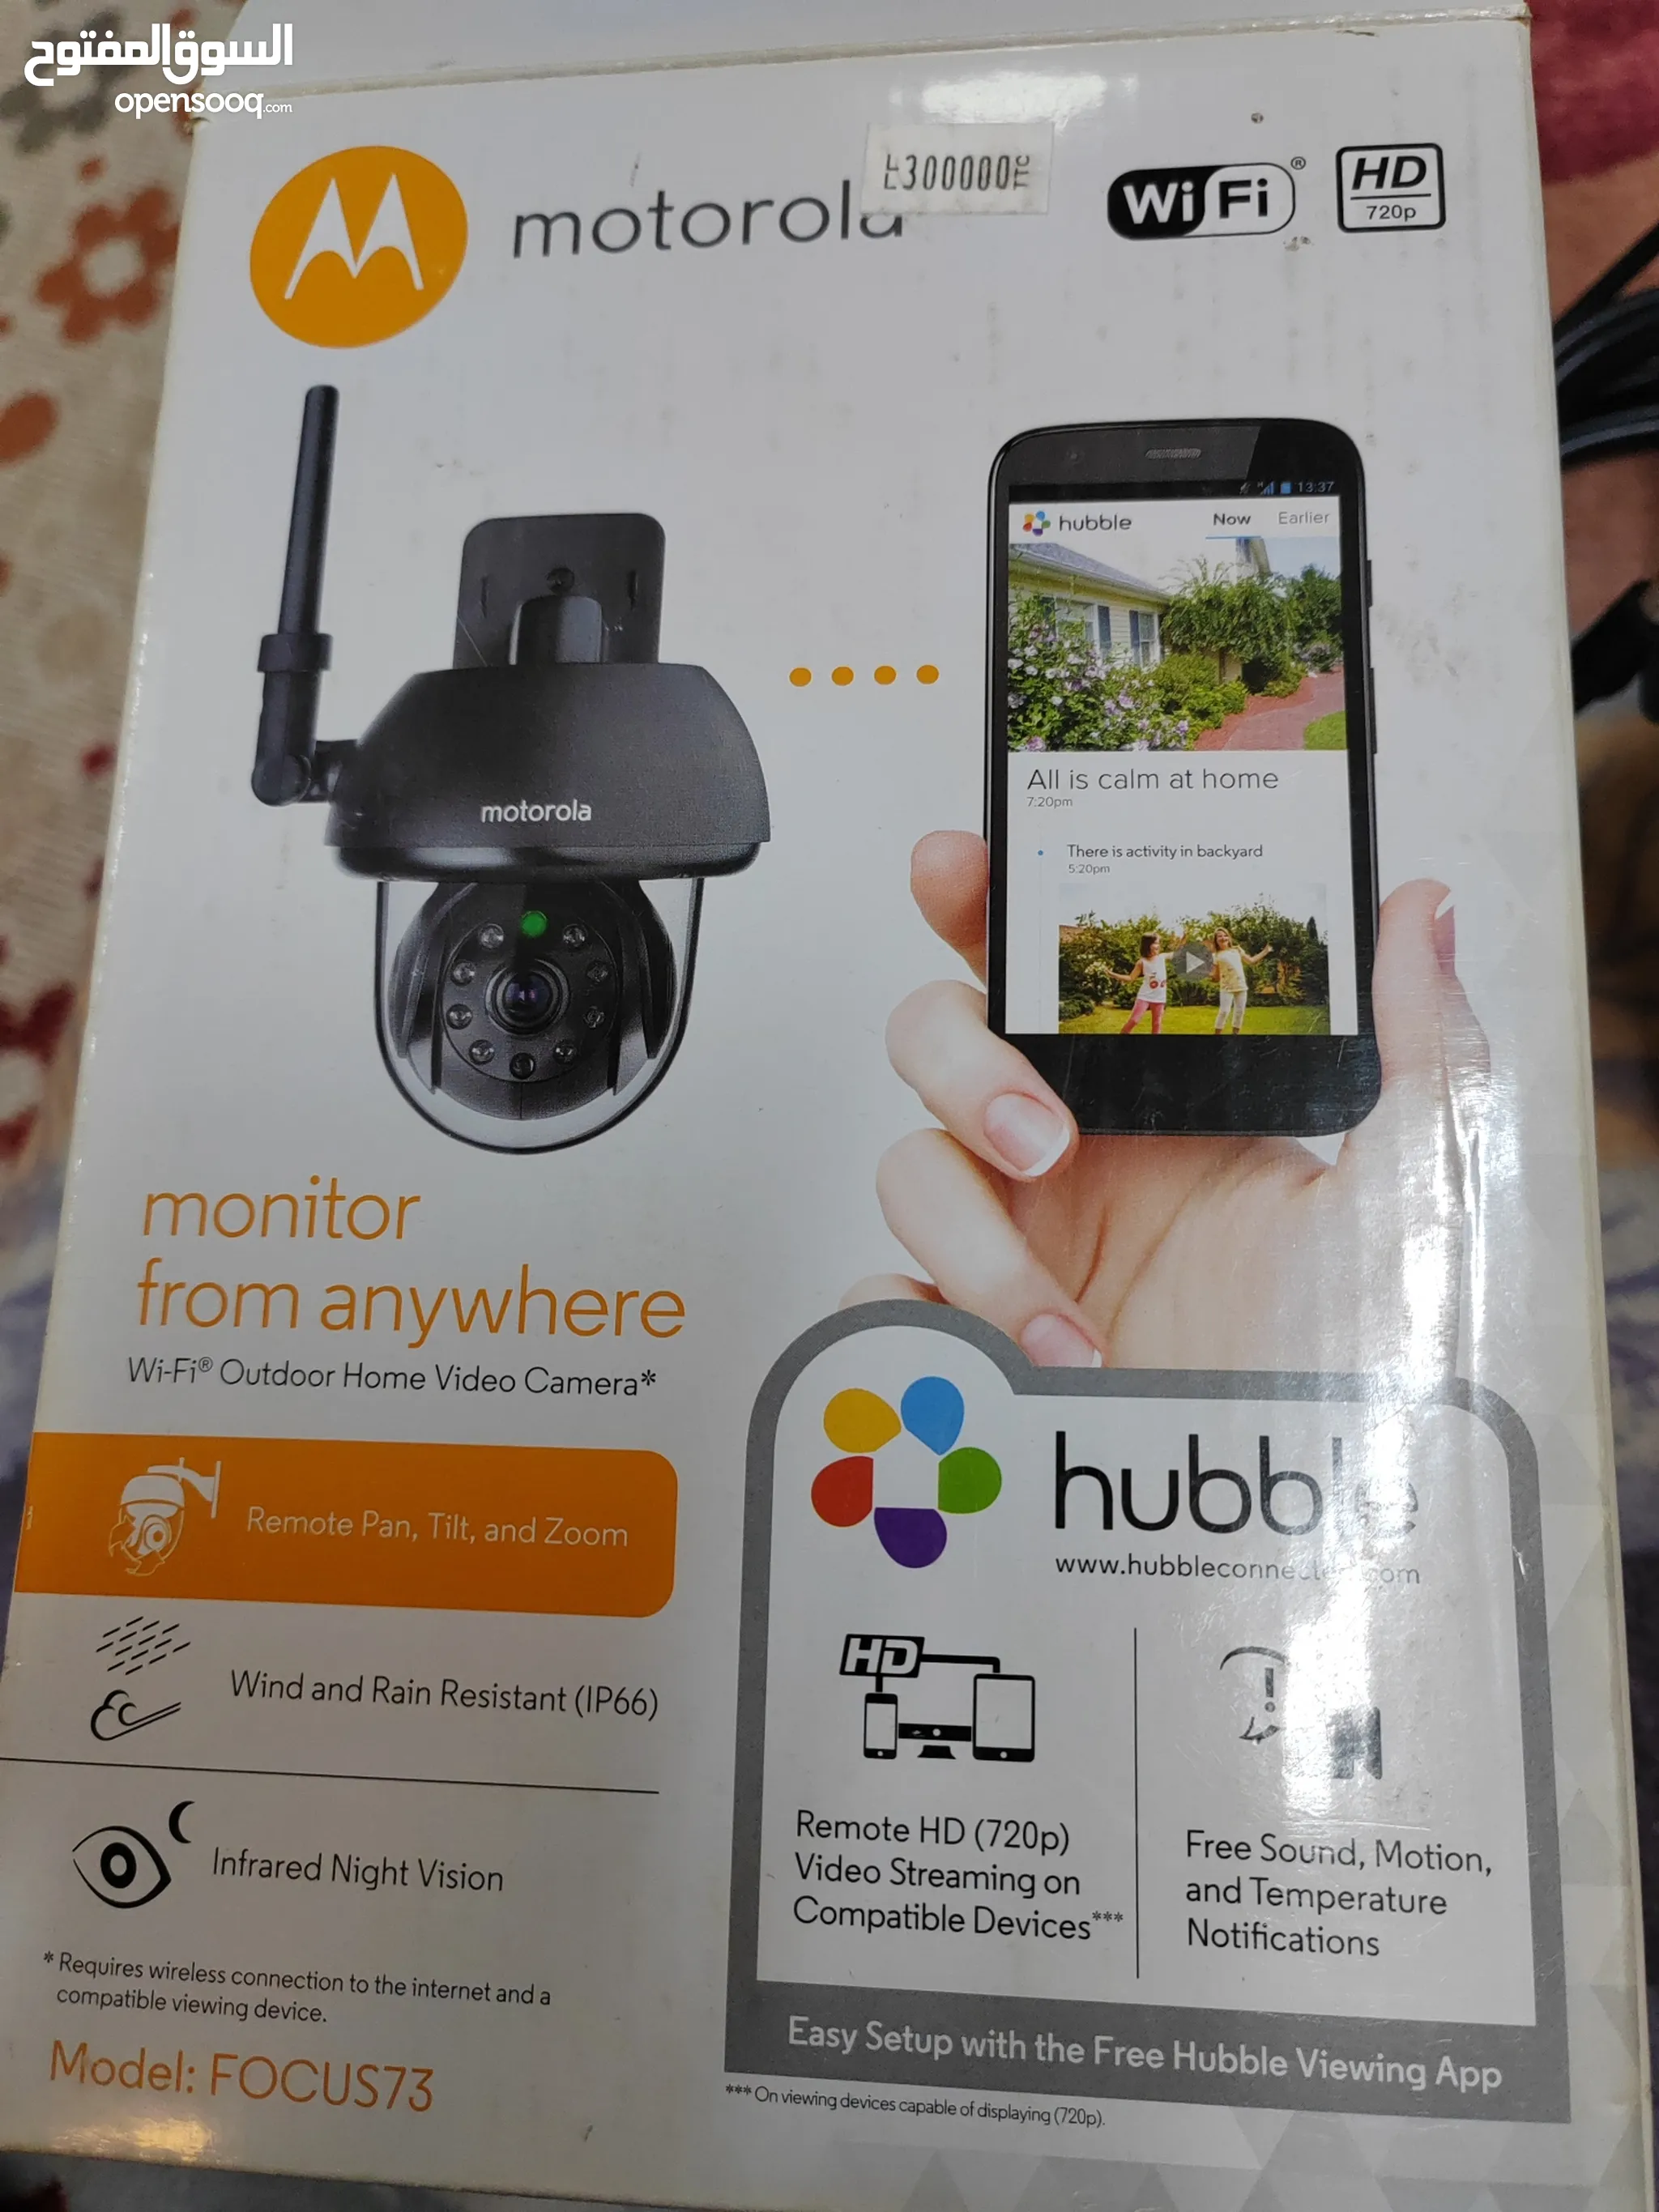 كاميرات مراقبة للبيع في الإمارات : كاميرات حرارية : ليلية : افضل الاسعار |  السوق المفتوح